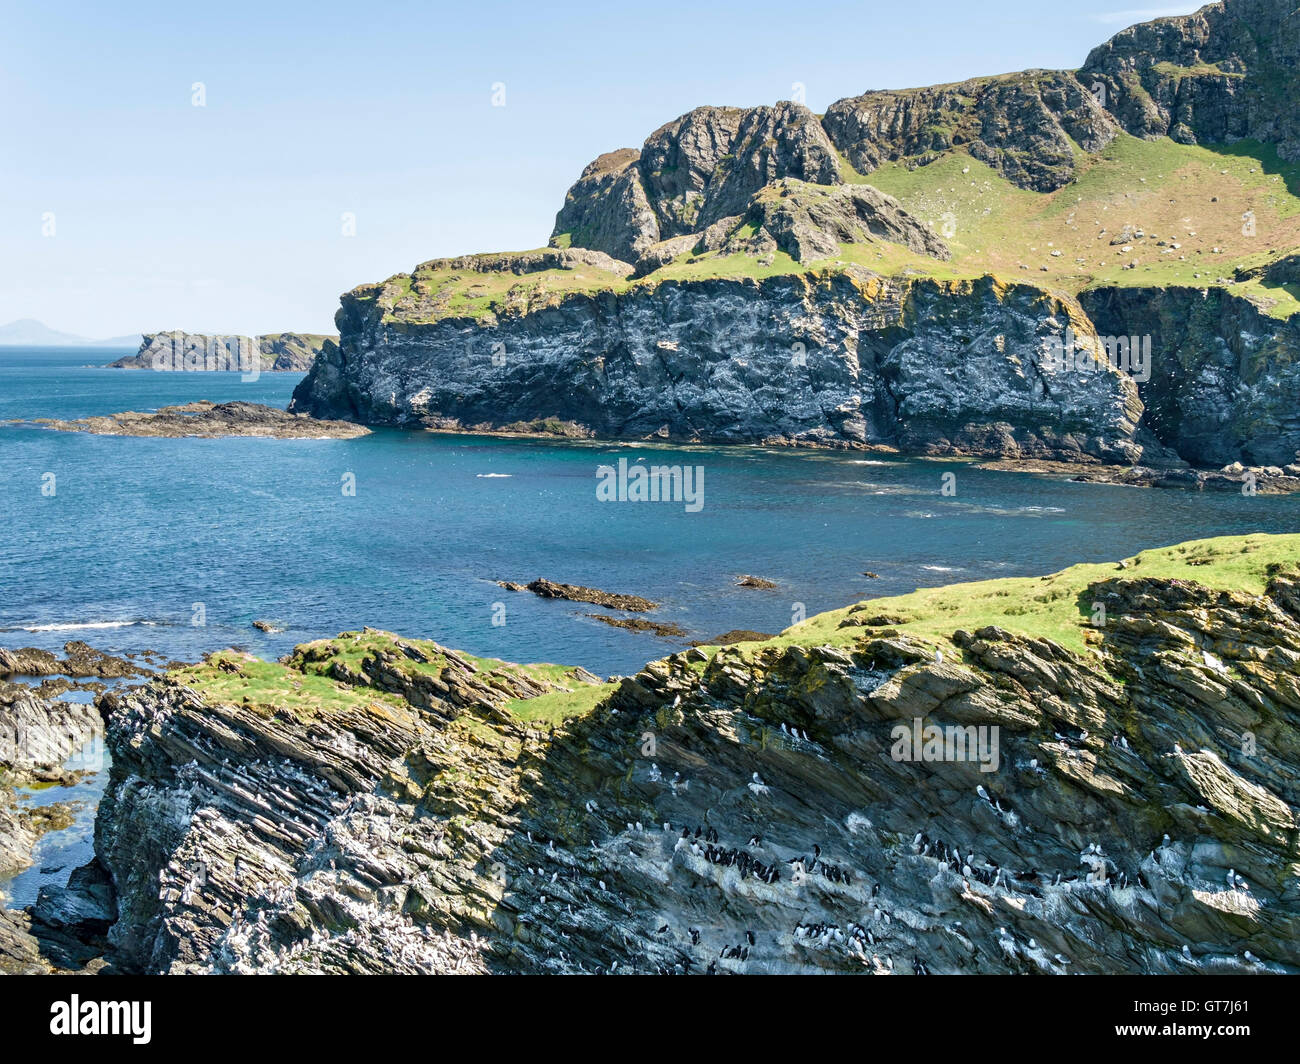 Oiseaux de mer et falaises rocheuses à l'interdiction du port près de Pig's Paradise à l'île de Colonsay, Ecosse, Royaume-Uni. Banque D'Images